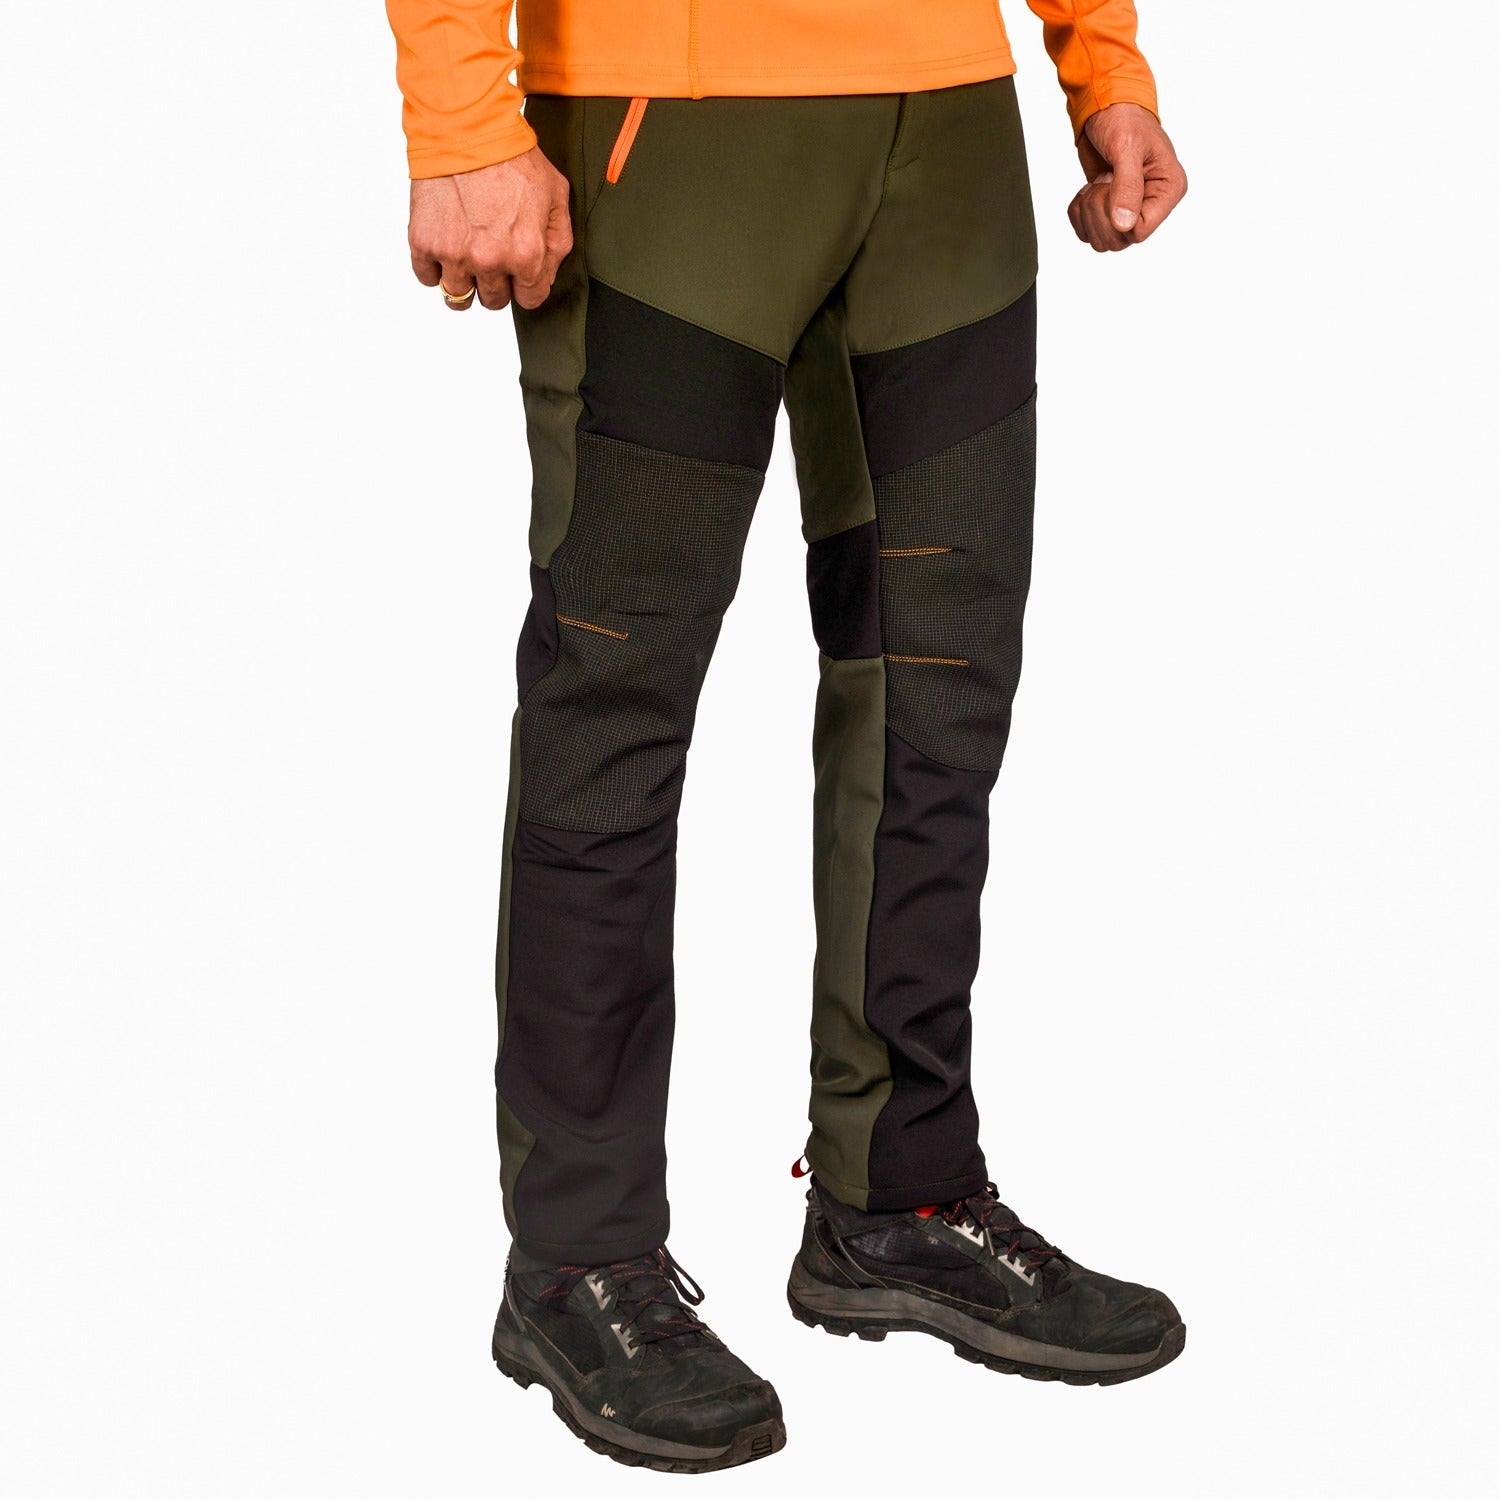 Buy Gokyo K2 Cold Weather Trekking & Outdoor Sherpa Pants | Trekking & Hiking Pants at Gokyo Outdoor Clothing & Gear